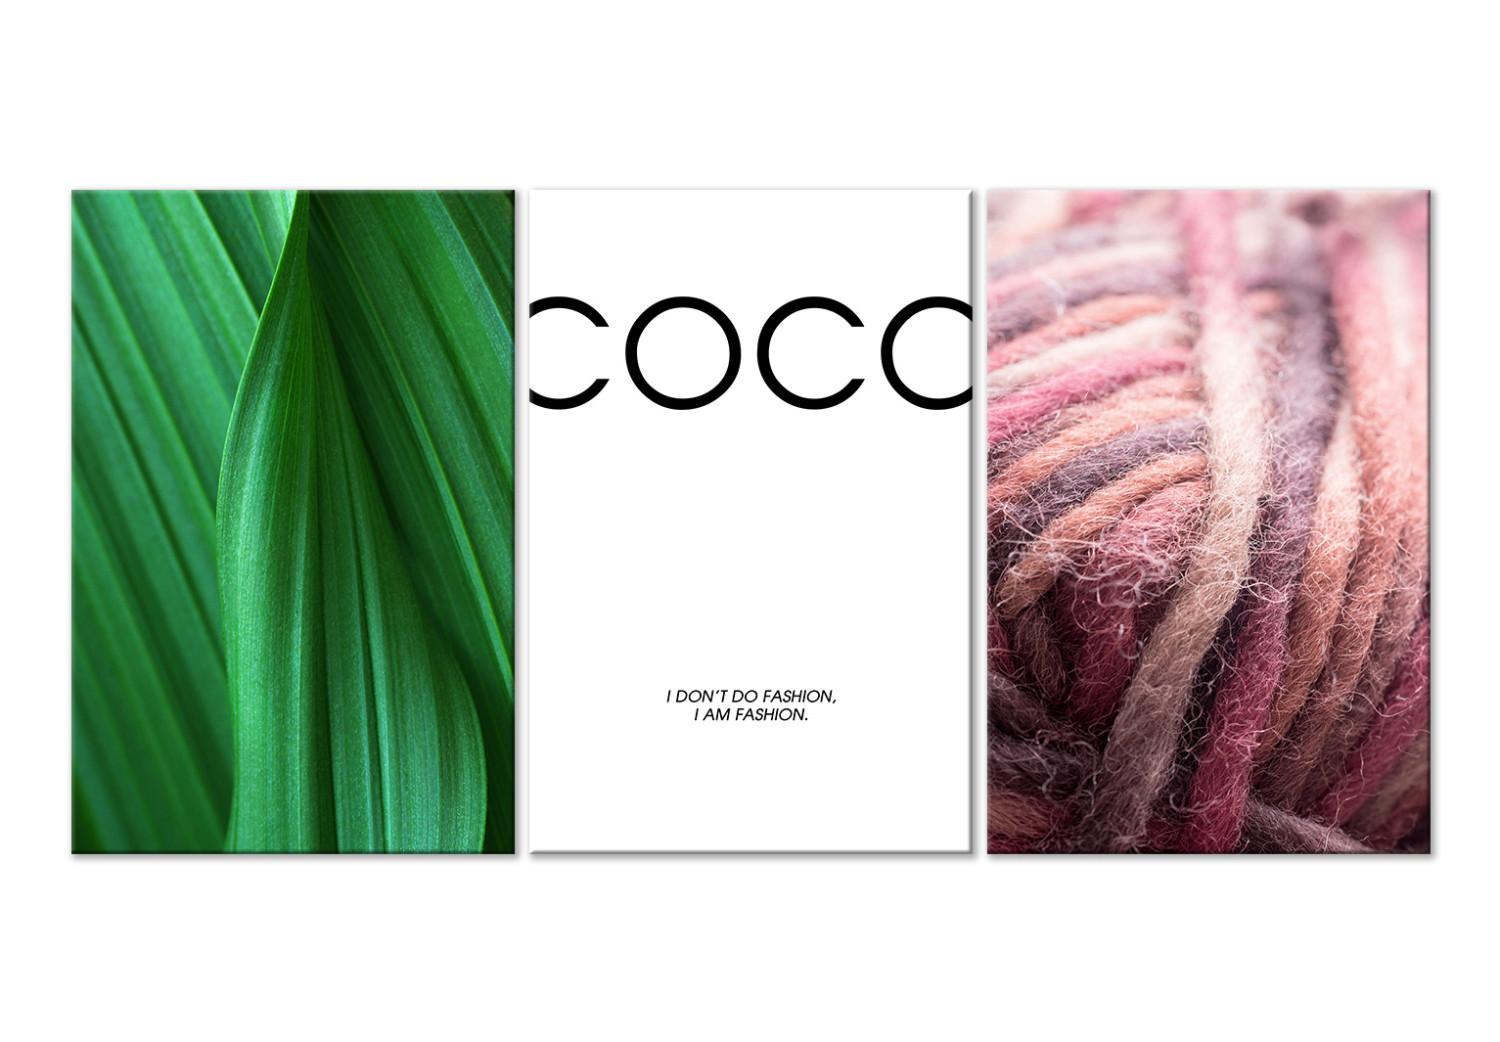 Cuadro I am Fashion - foto de una planta e hilo y gráfico con la palabra Coco